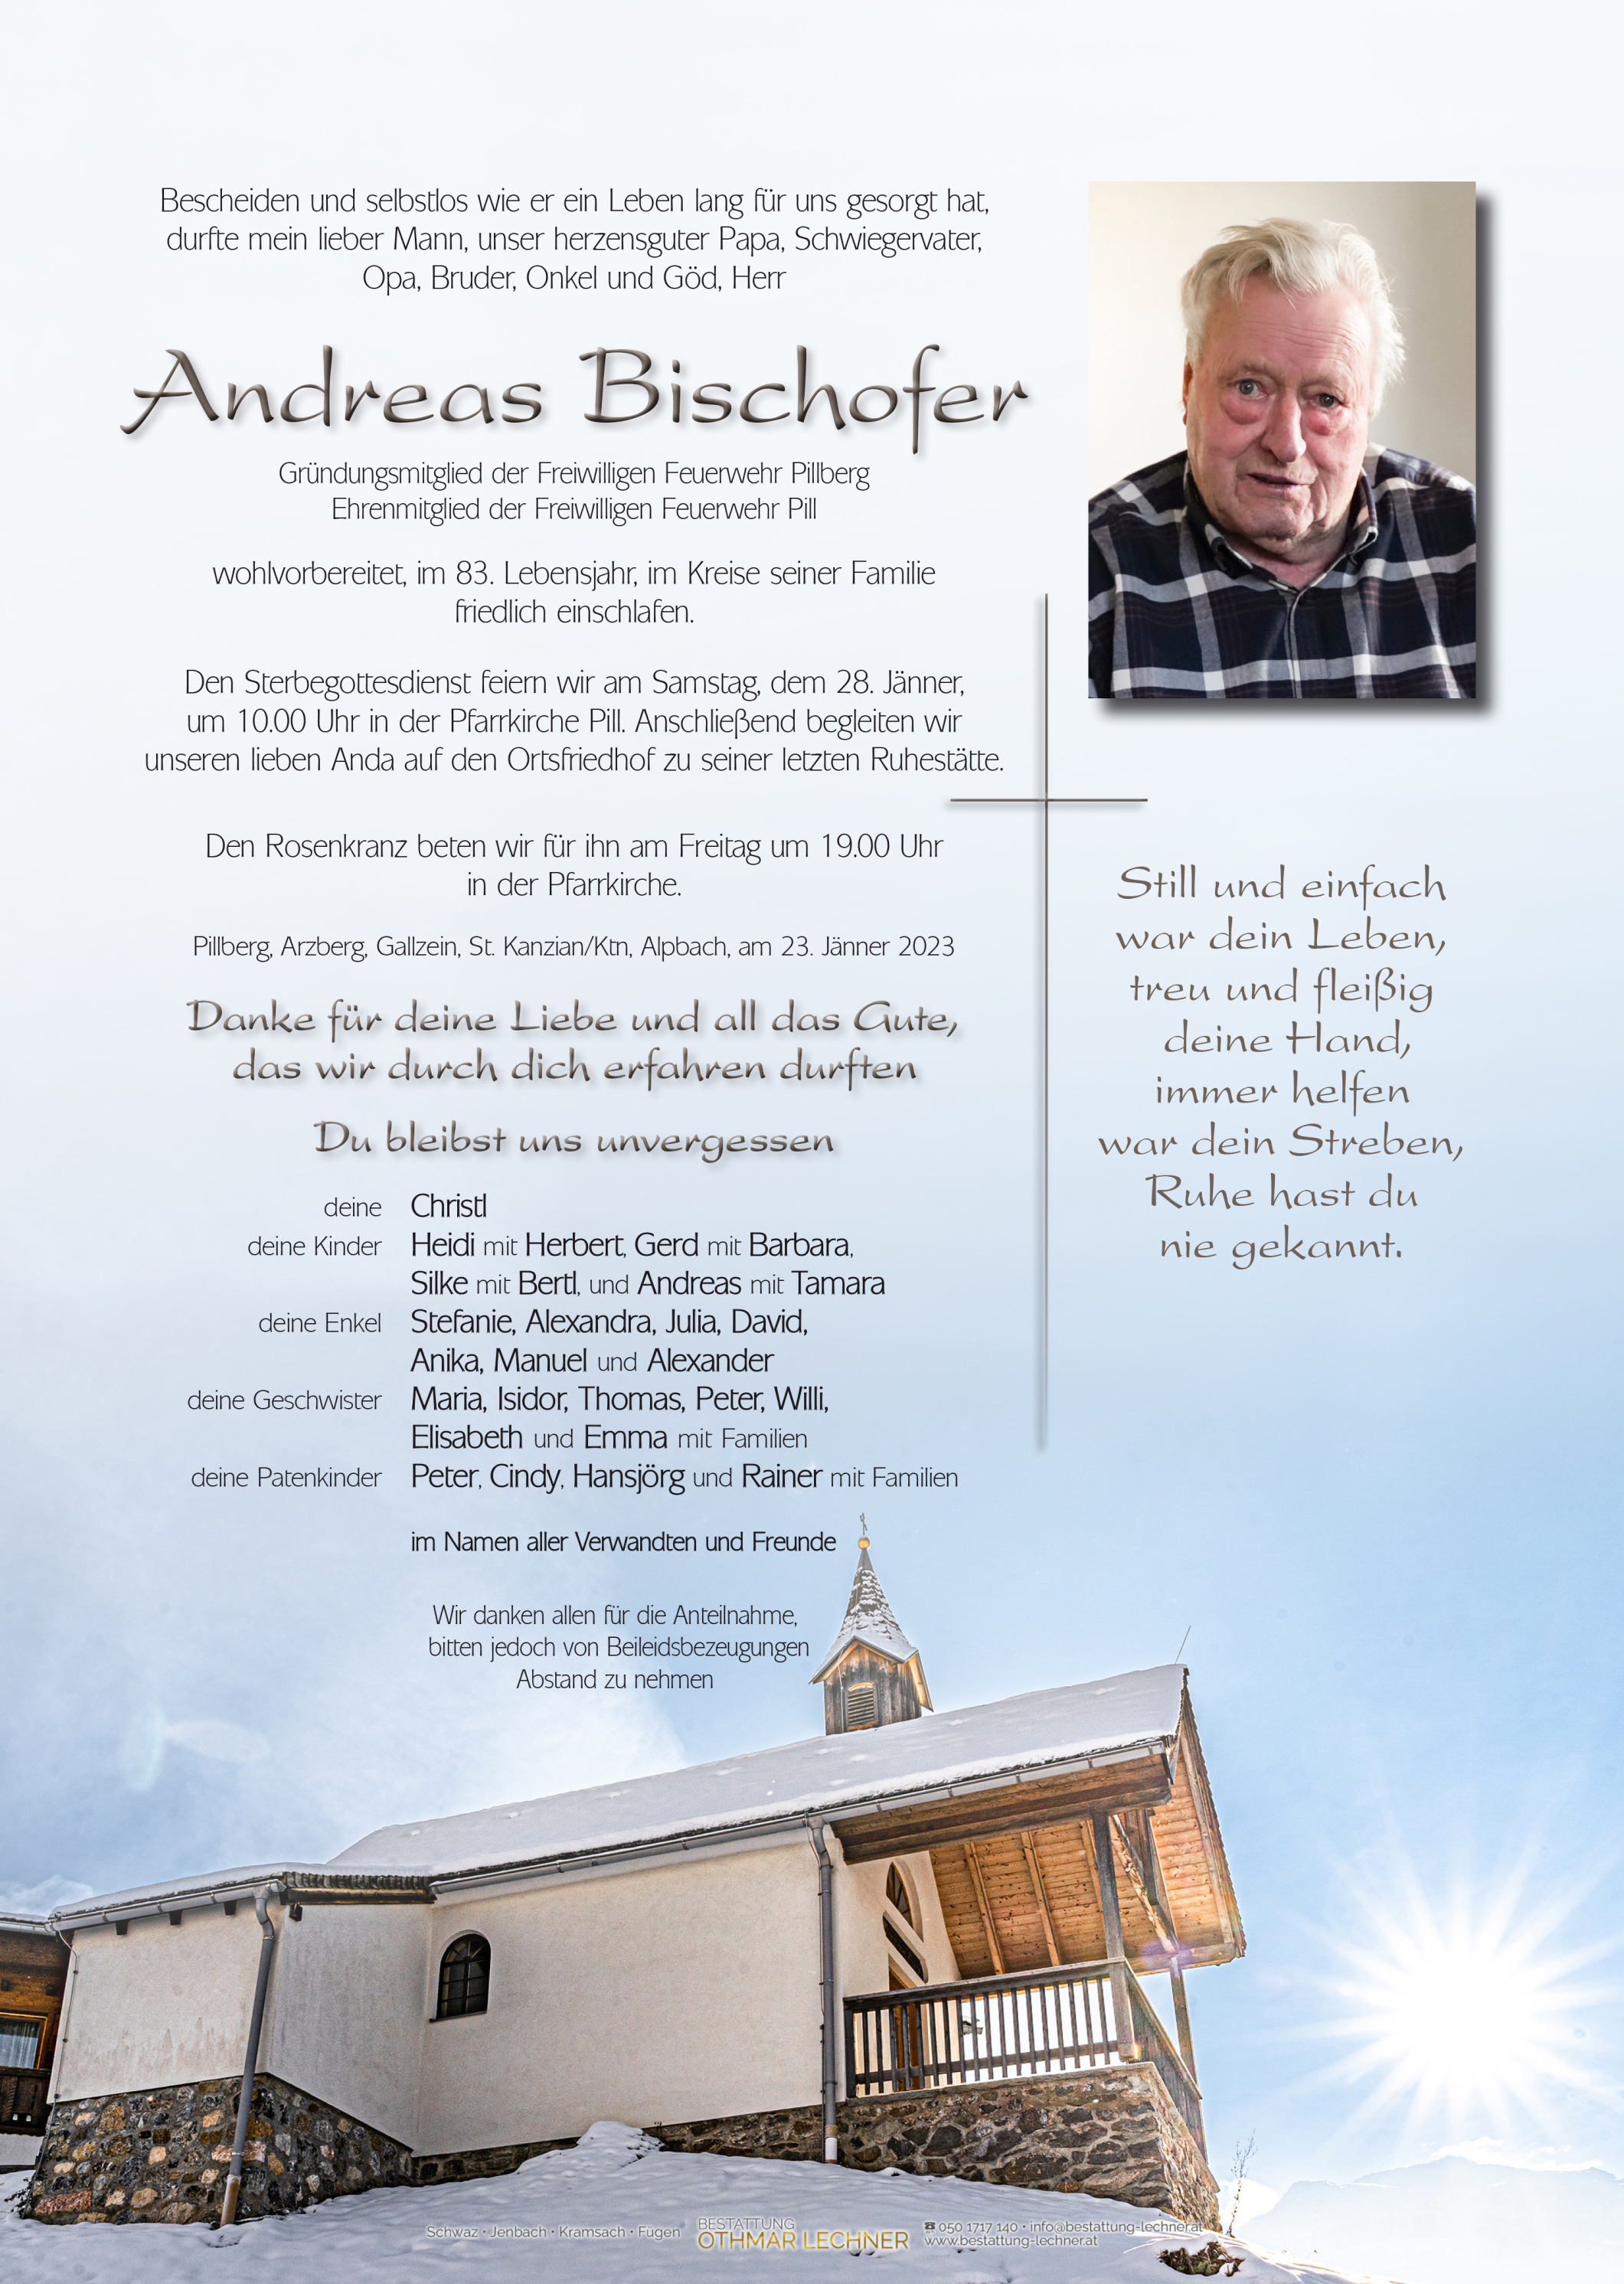 Andreas Bischofer